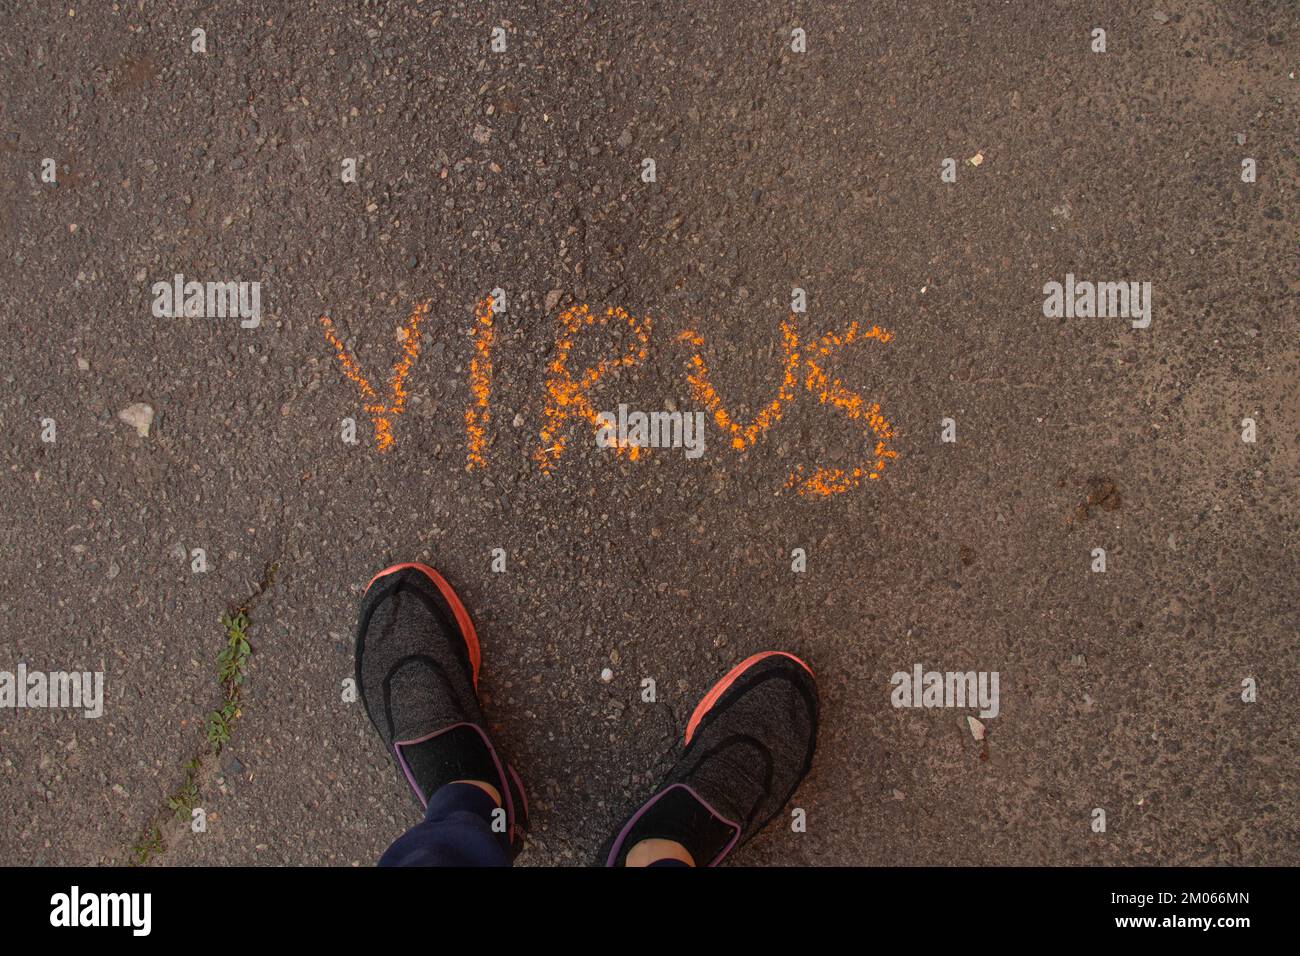 Das Wort Virus wird in englischer Kreide auf dem Asphalt geschrieben Stockfoto